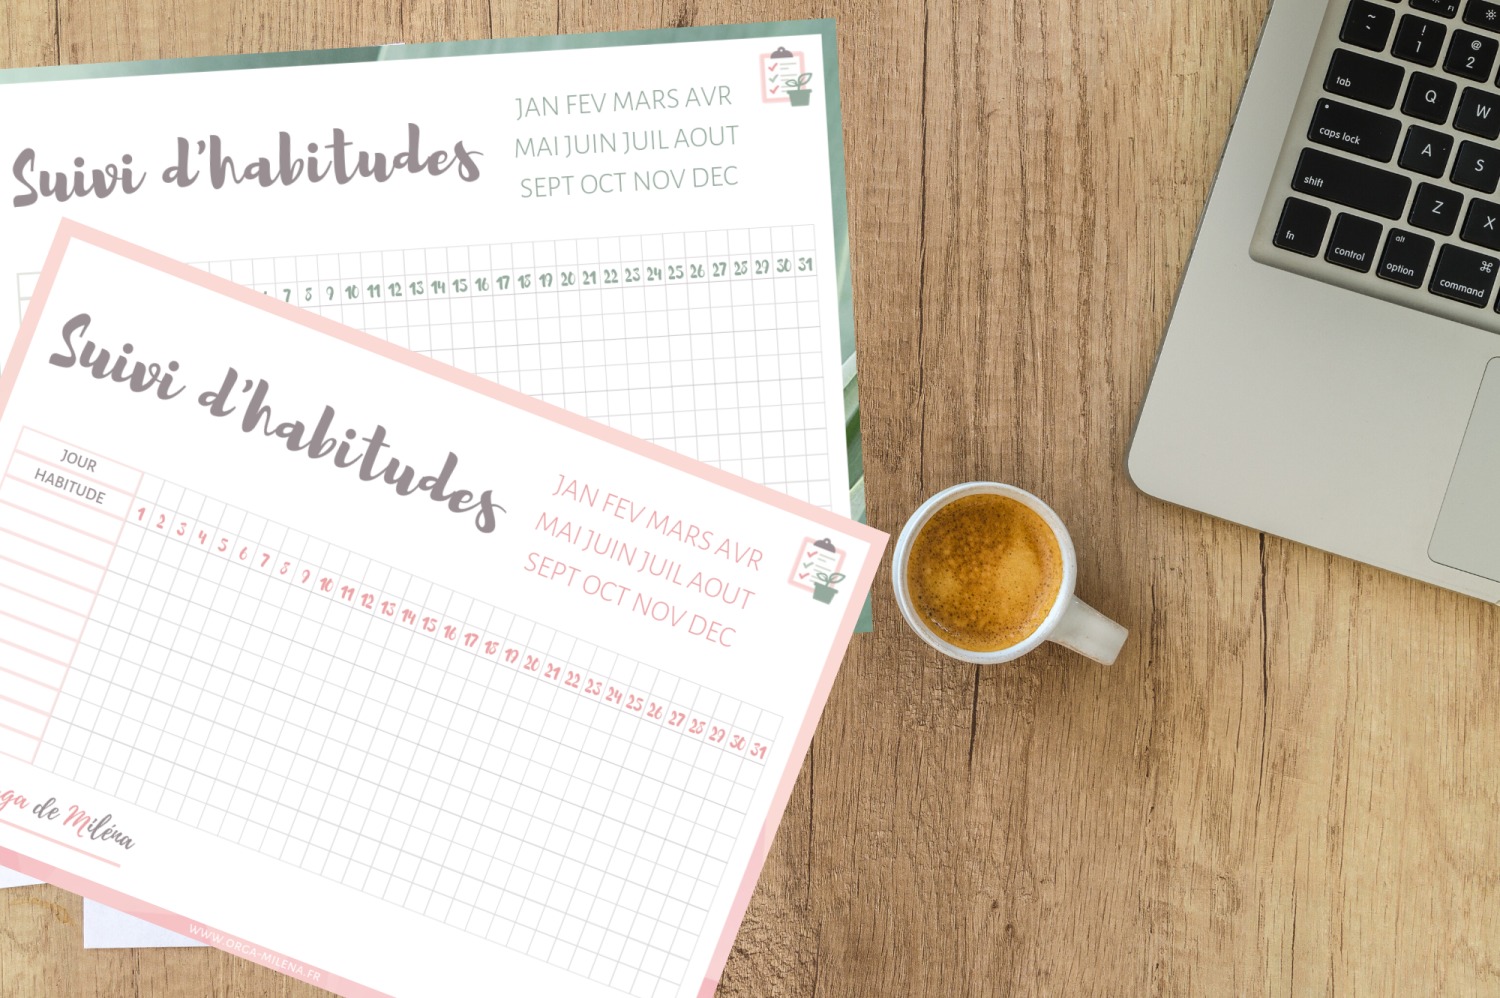 Pour bien s'organiser cette année, voici une liste de 20 habitudes parmi lesquelles piocher tout au long de l'année pour gagner en temps et en productivité #organisation #habitudes #productivité #routine